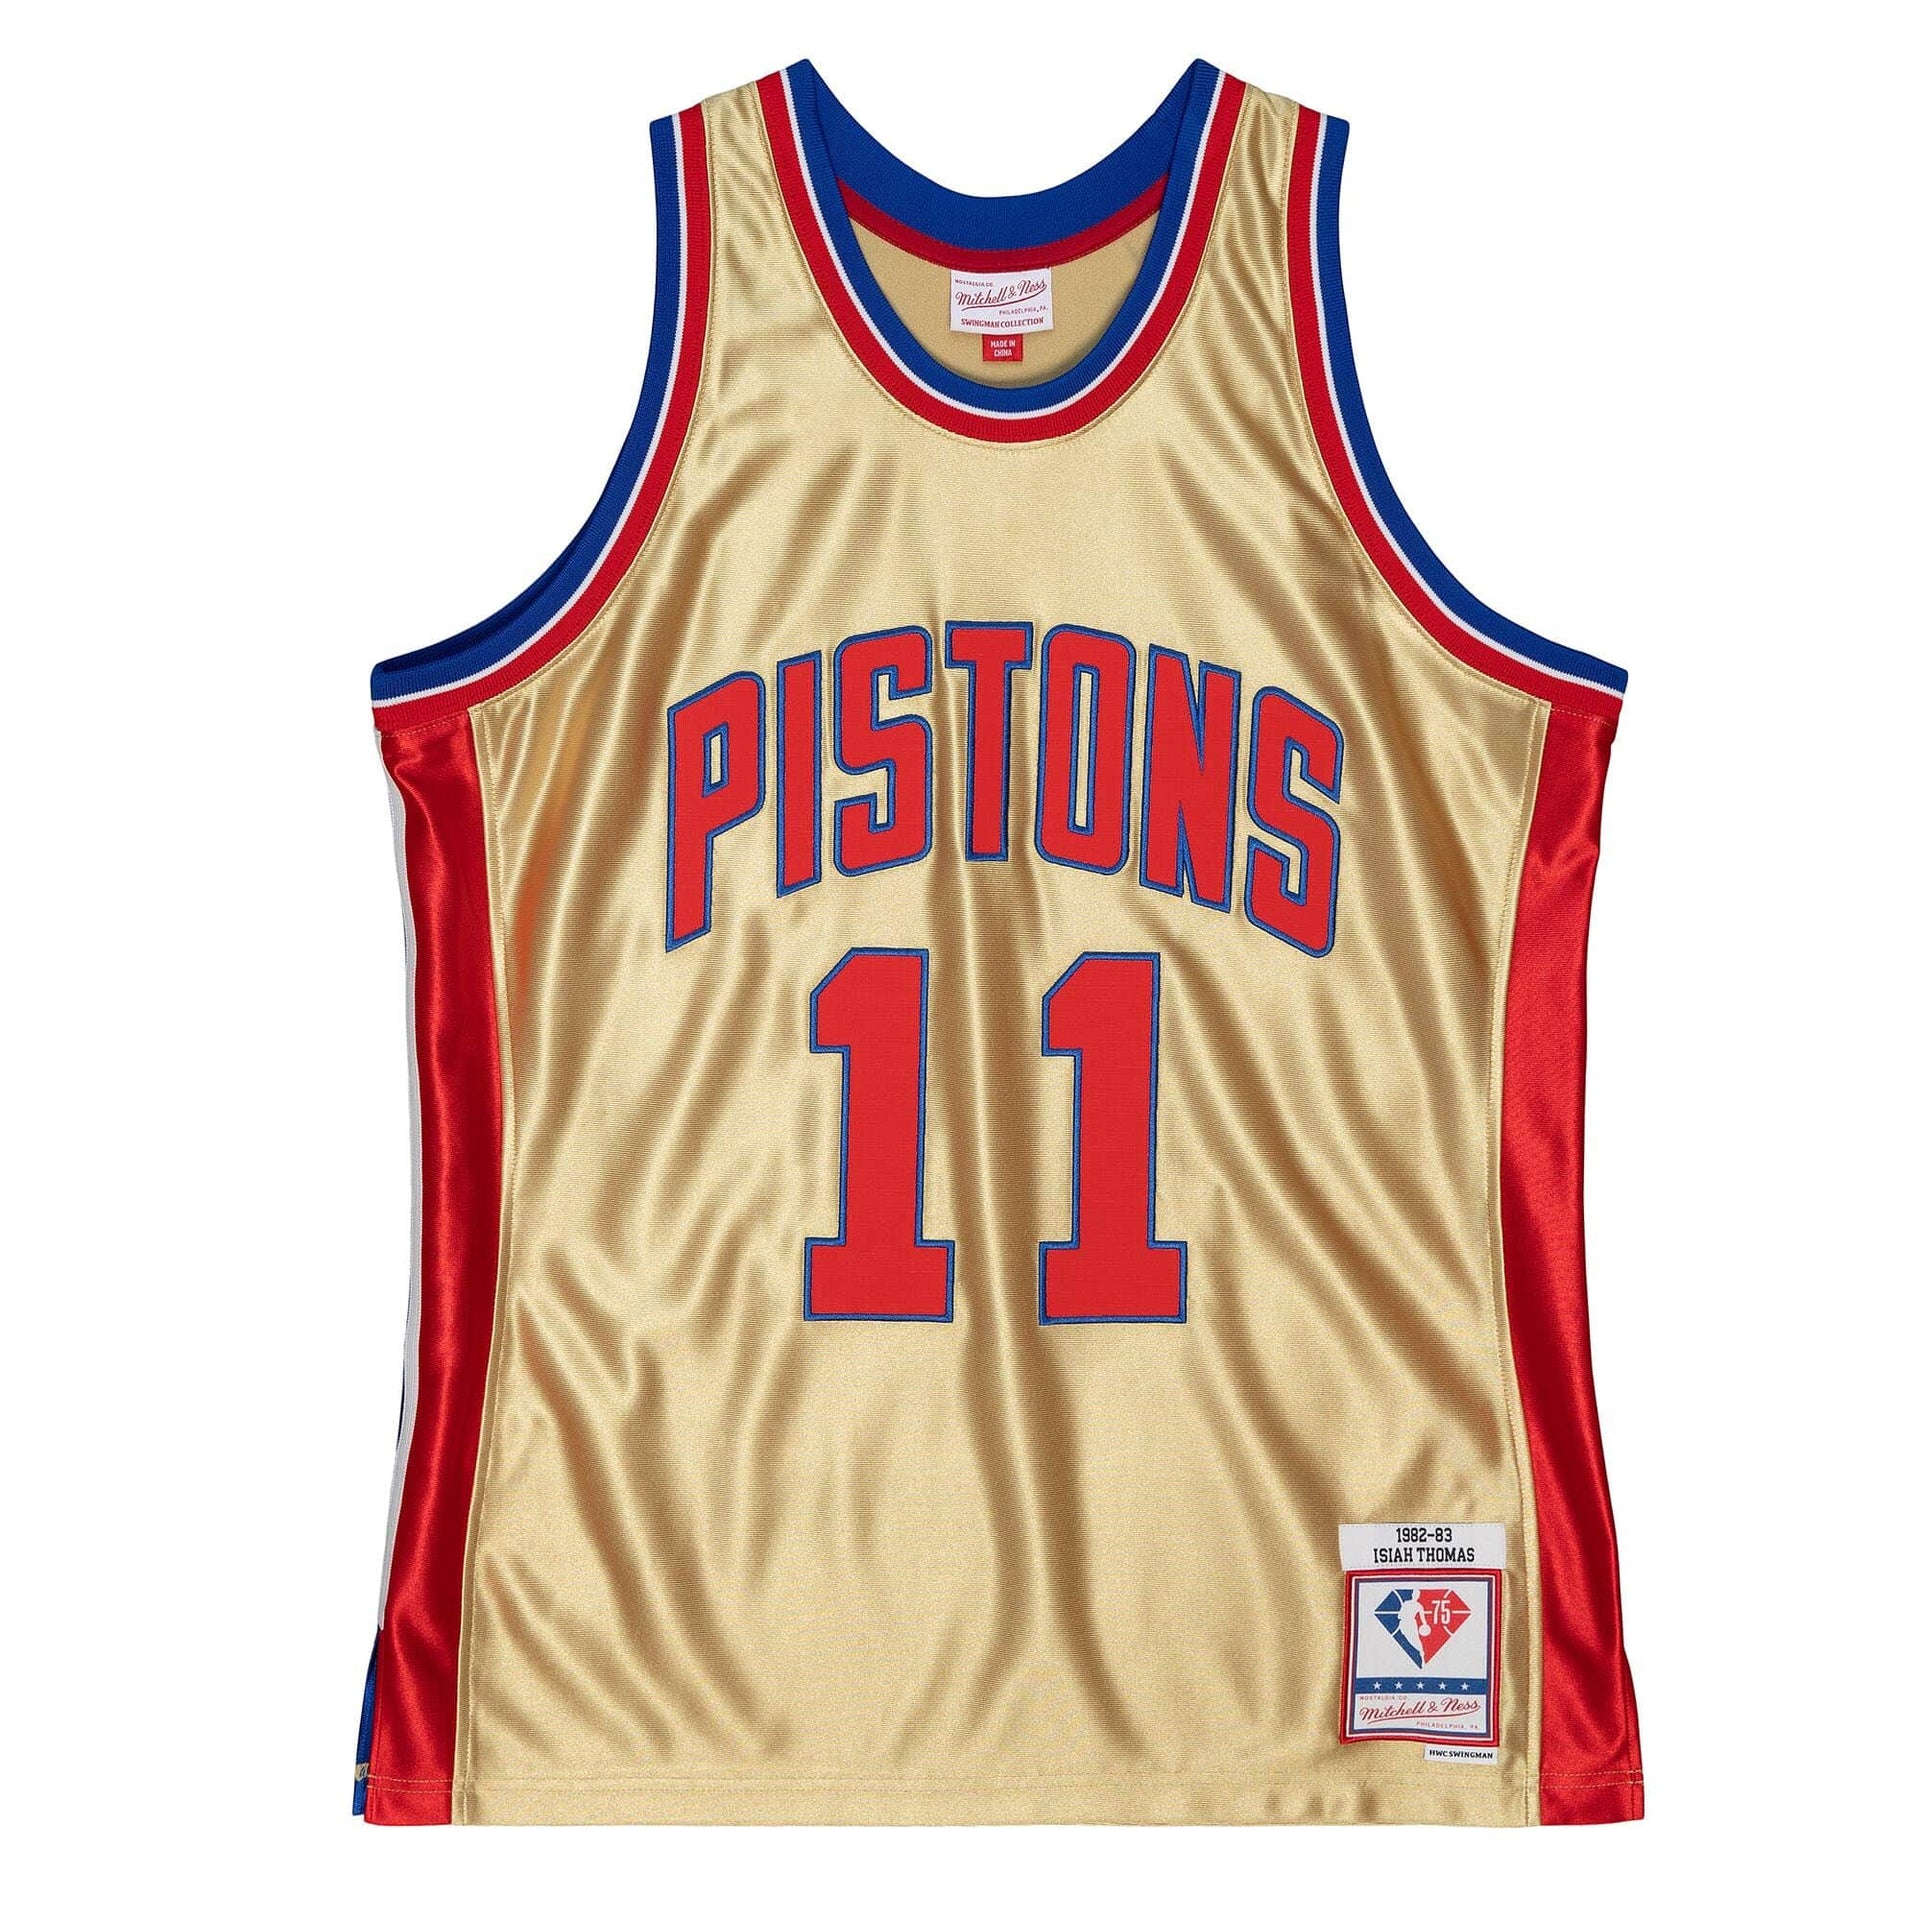 Swingman Isiah Thomas Detroit Pistons 1982-83 Jersey